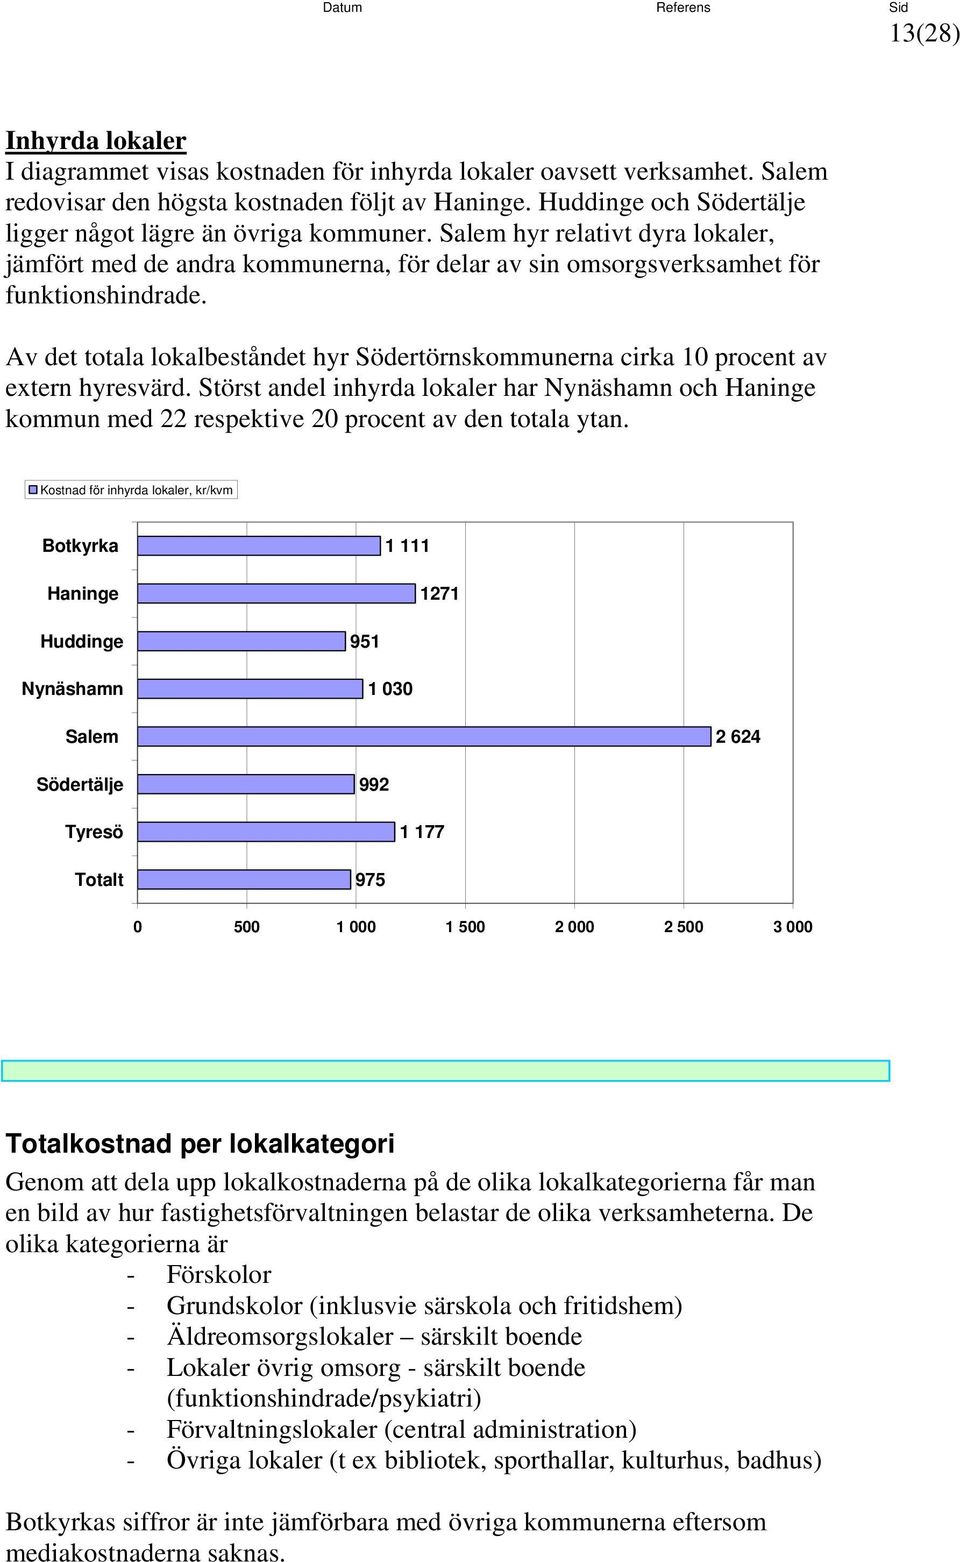 Av det totala lokalbeståndet hyr Södertörnskommunerna cirka 1 procent av extern hyresvärd. Störst andel inhyrda lokaler har och kommun med 22 respektive 2 procent av den totala ytan.